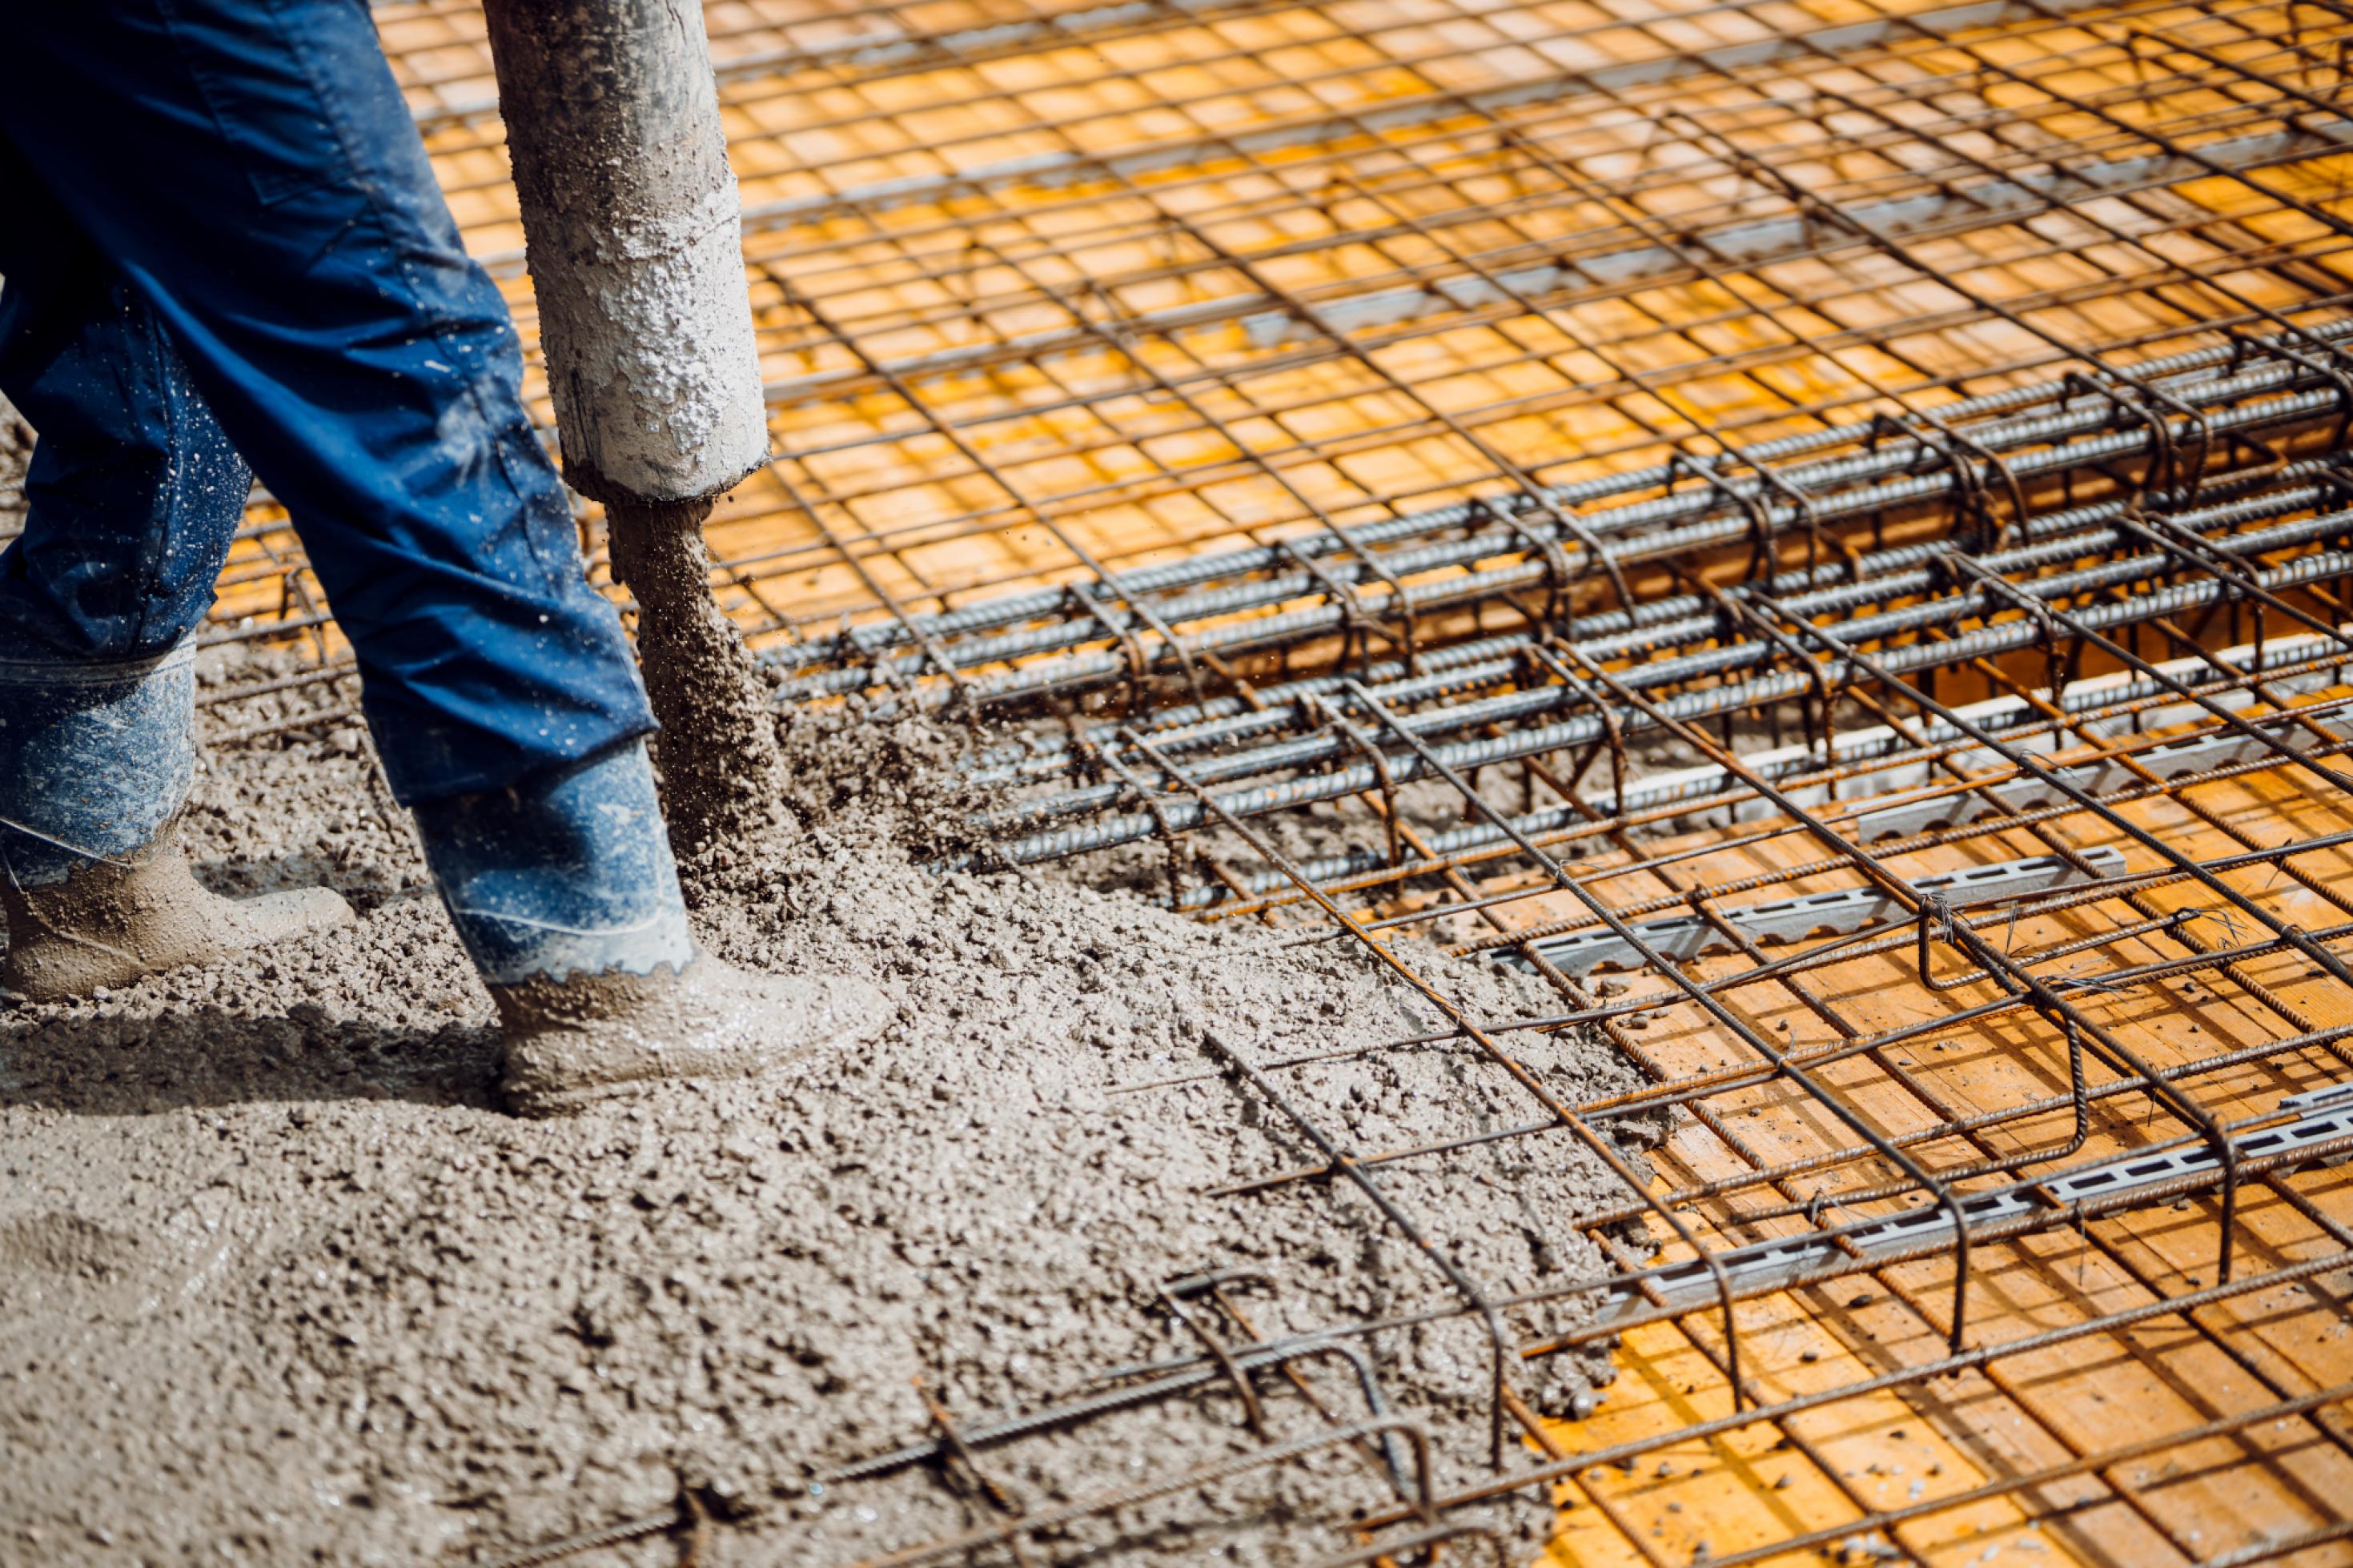 Die Beine eines Menschen in Gummistiefeln stehen auf einem Geflecht aus Baustahl, während aus einem Rohr flüssiger grauer Beton daneben gegossen wird. Es ist dreckig.